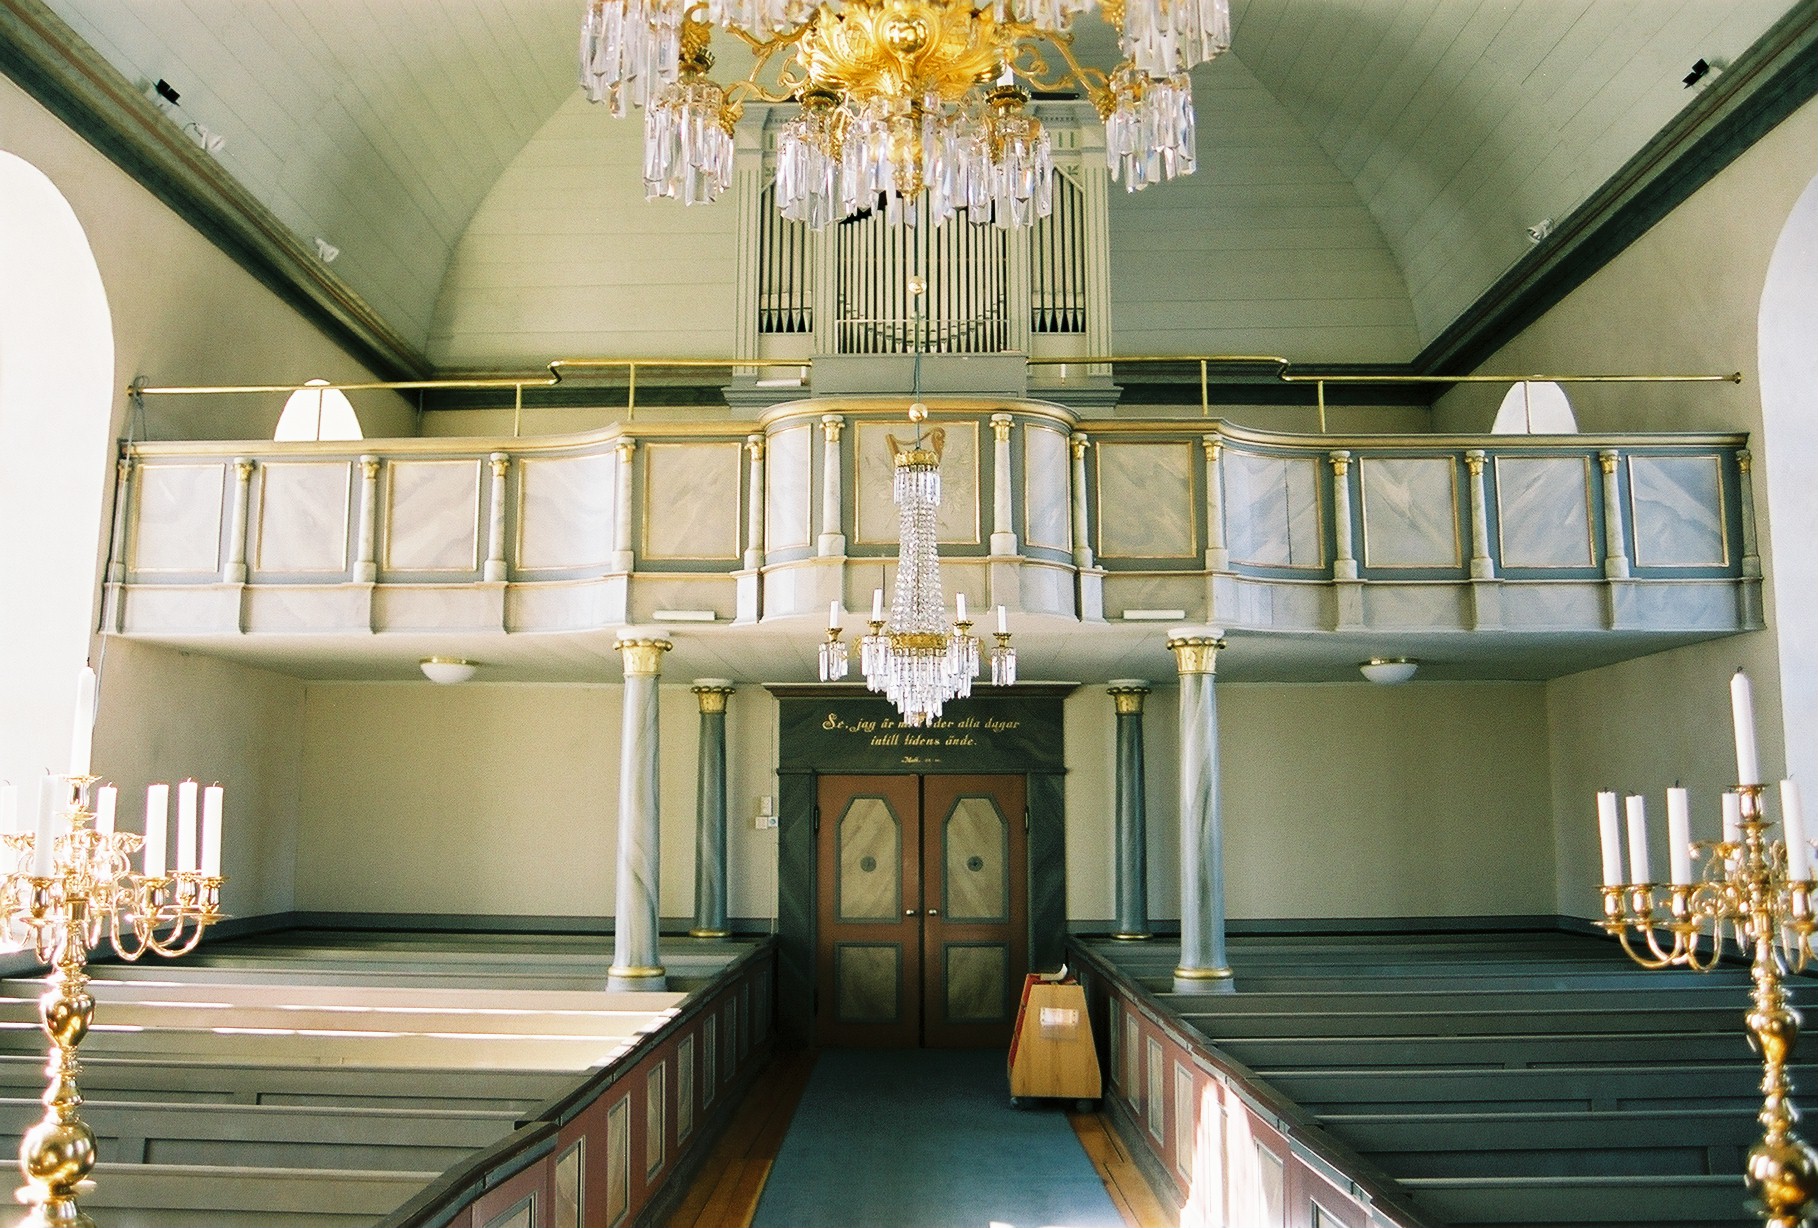 Kyrkås kyrka, interiör, kyrkorummet mot orgelläktaren i väster.

Bilderna är tagna av Martin Lagergren & Emelie Petersson, bebyggelseantikvarier vid Jämtlands läns museum, i samband med inventeringen, 2004-2005.